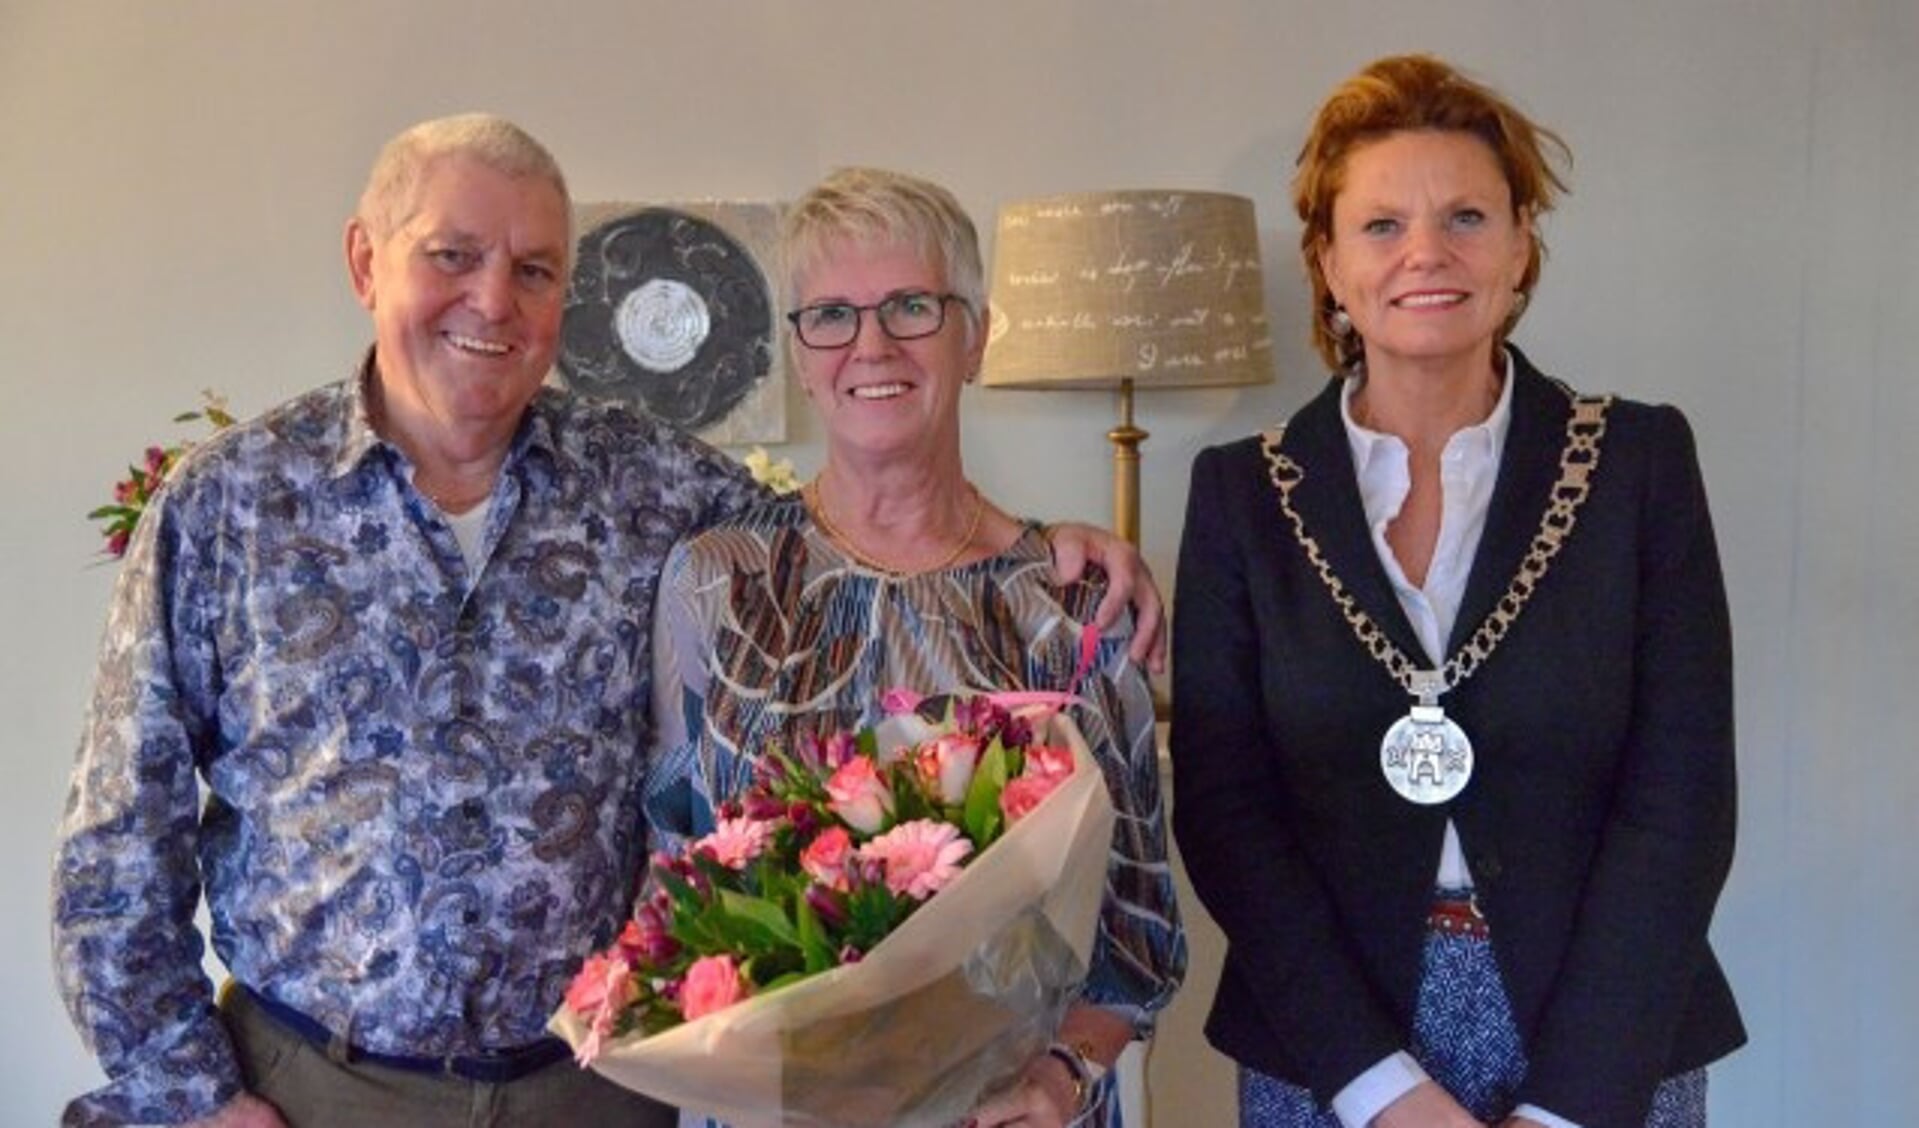 Burgemeester Petra van Hartskamp bracht woensdagmiddag haar felicitaties aan het gouden bruidspaar Koos en Bets van Schaik en ging met ze op de foto. (Foto: Paul van den Dungen)